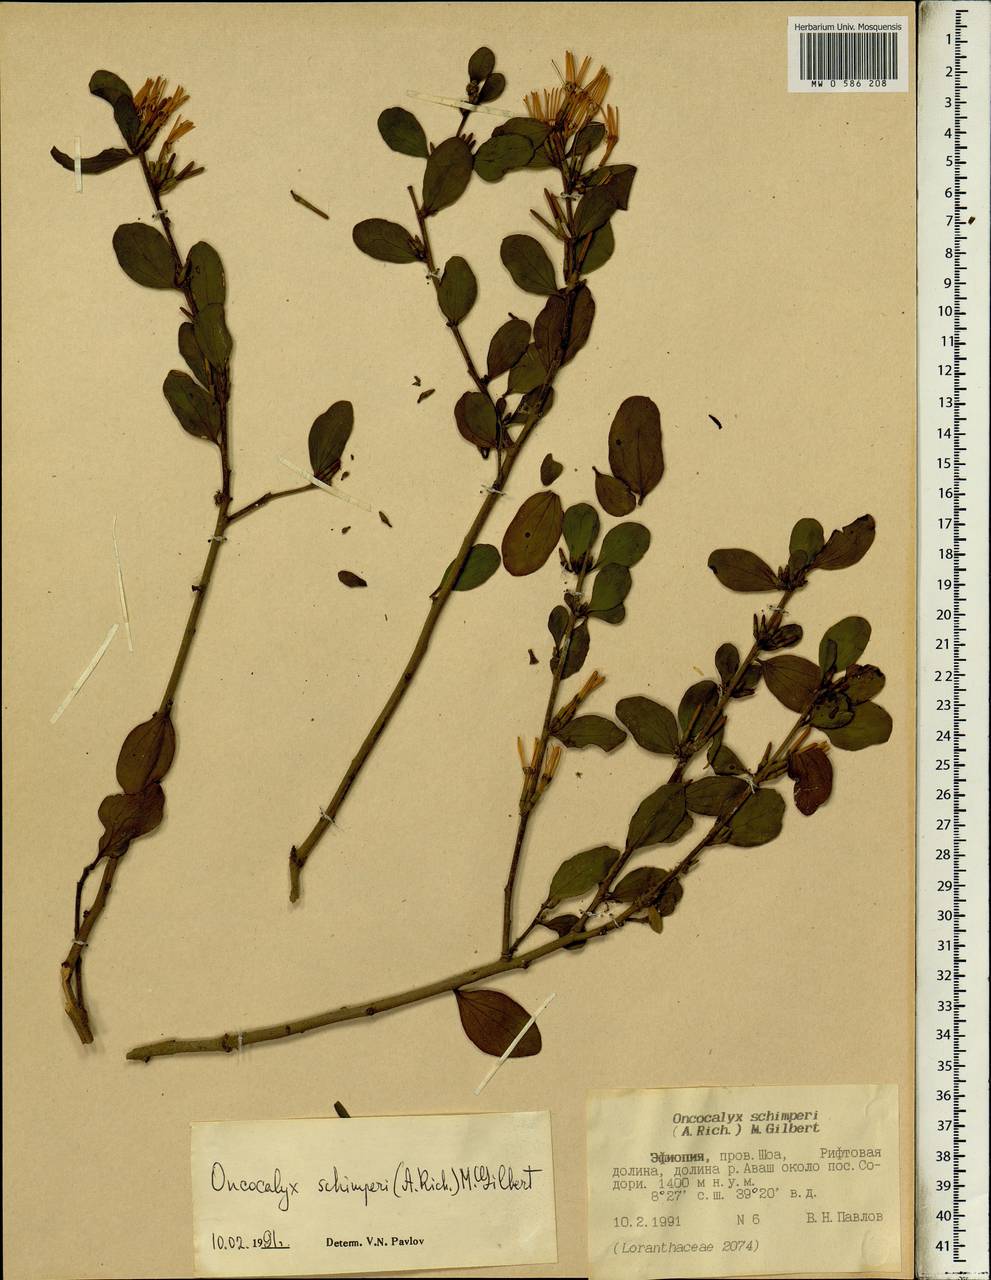 Oncocalyx schimperi (Hochst. ex A. Rich.) M.G. Gilbert, Африка (AFR) (Эфиопия)